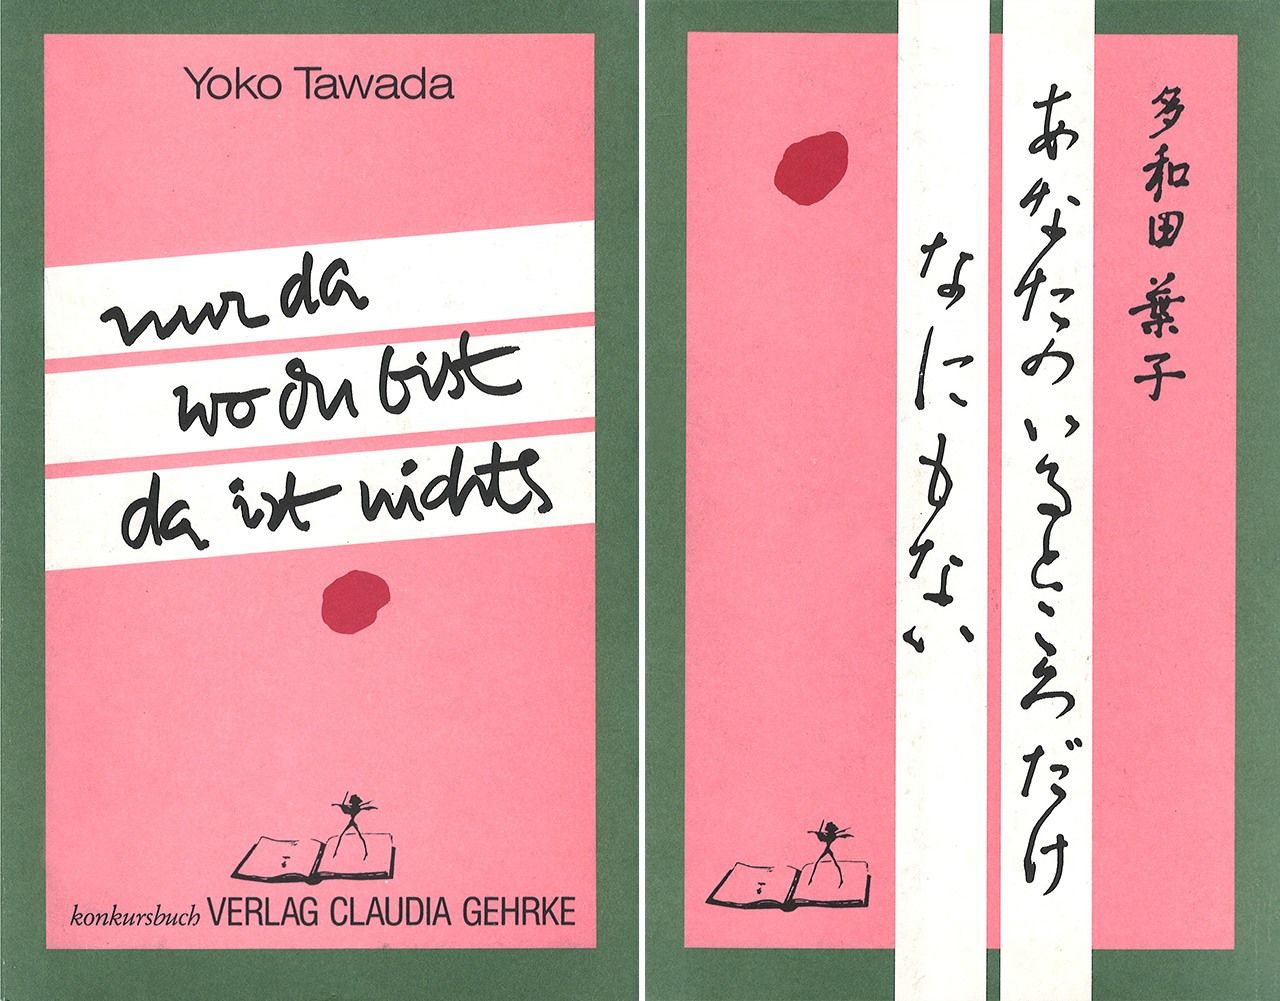 كتاب واحد، وغلافان: صفحات العنوان الألمانية واليابانية لكتاب تاوادا الأول، الذي نُشر في عام 1987، نور دا فو دو بيست دا إيست نيشستس (لا شيء فقط حيث أنت).